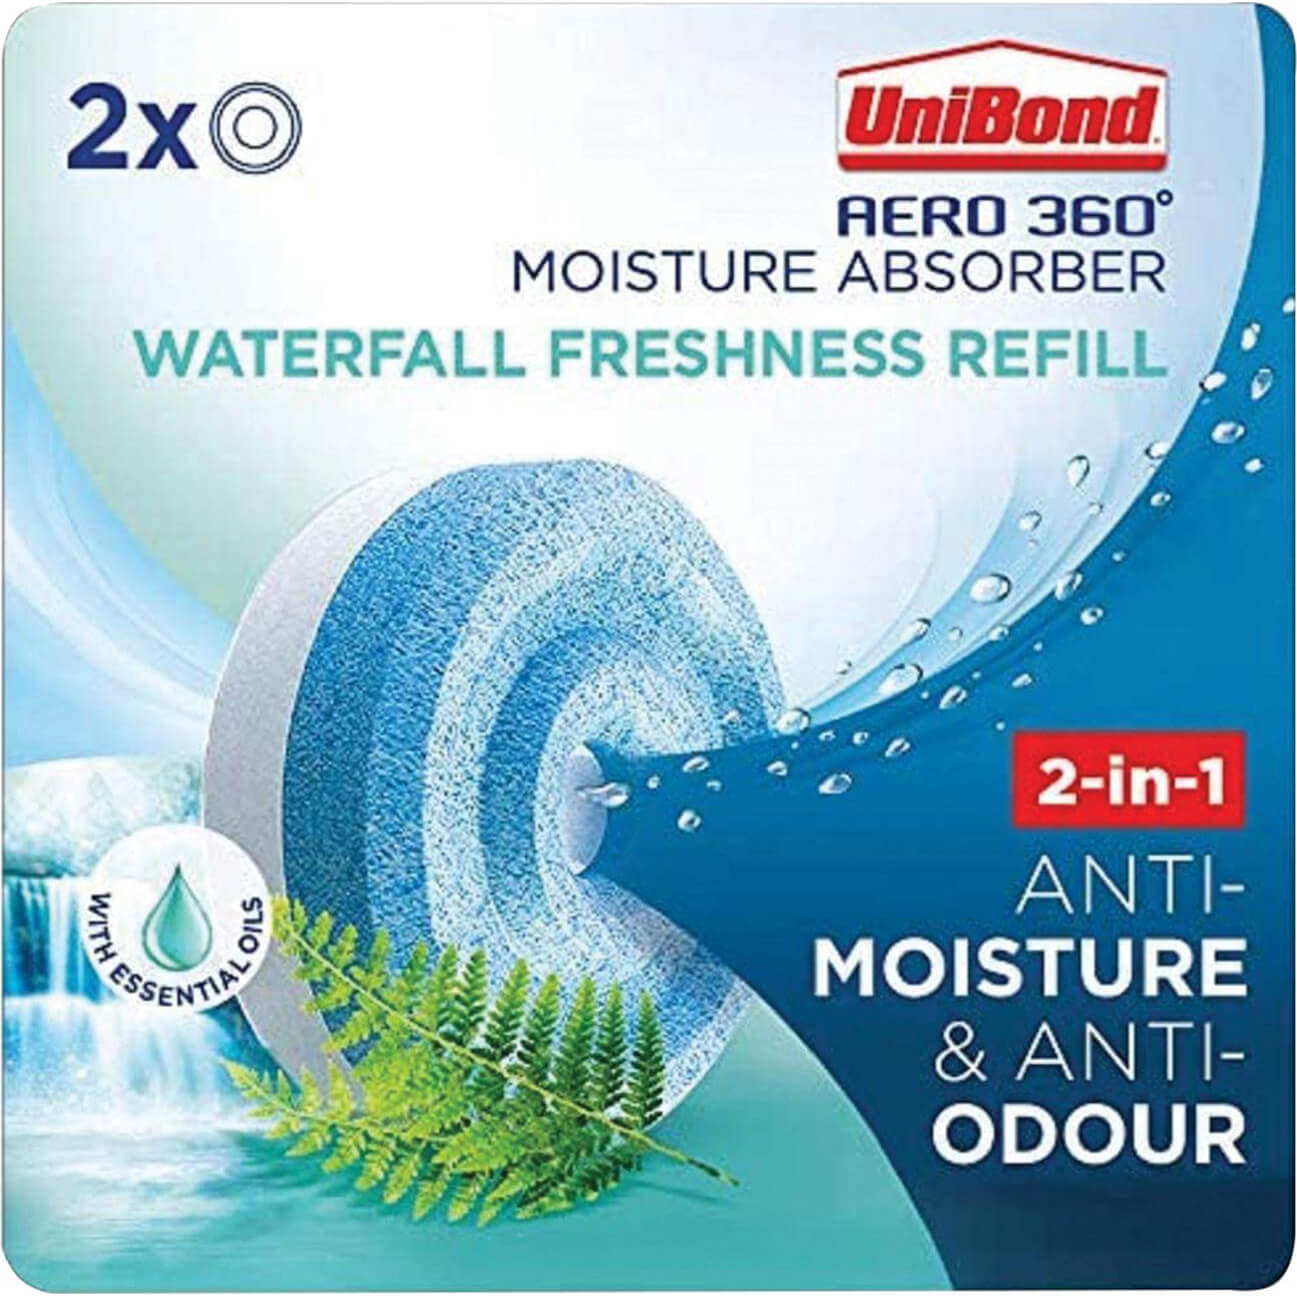 Image of Unibond Aero 360 Passive Dehumidifier Waterfall Freshness Refills Pack of 2